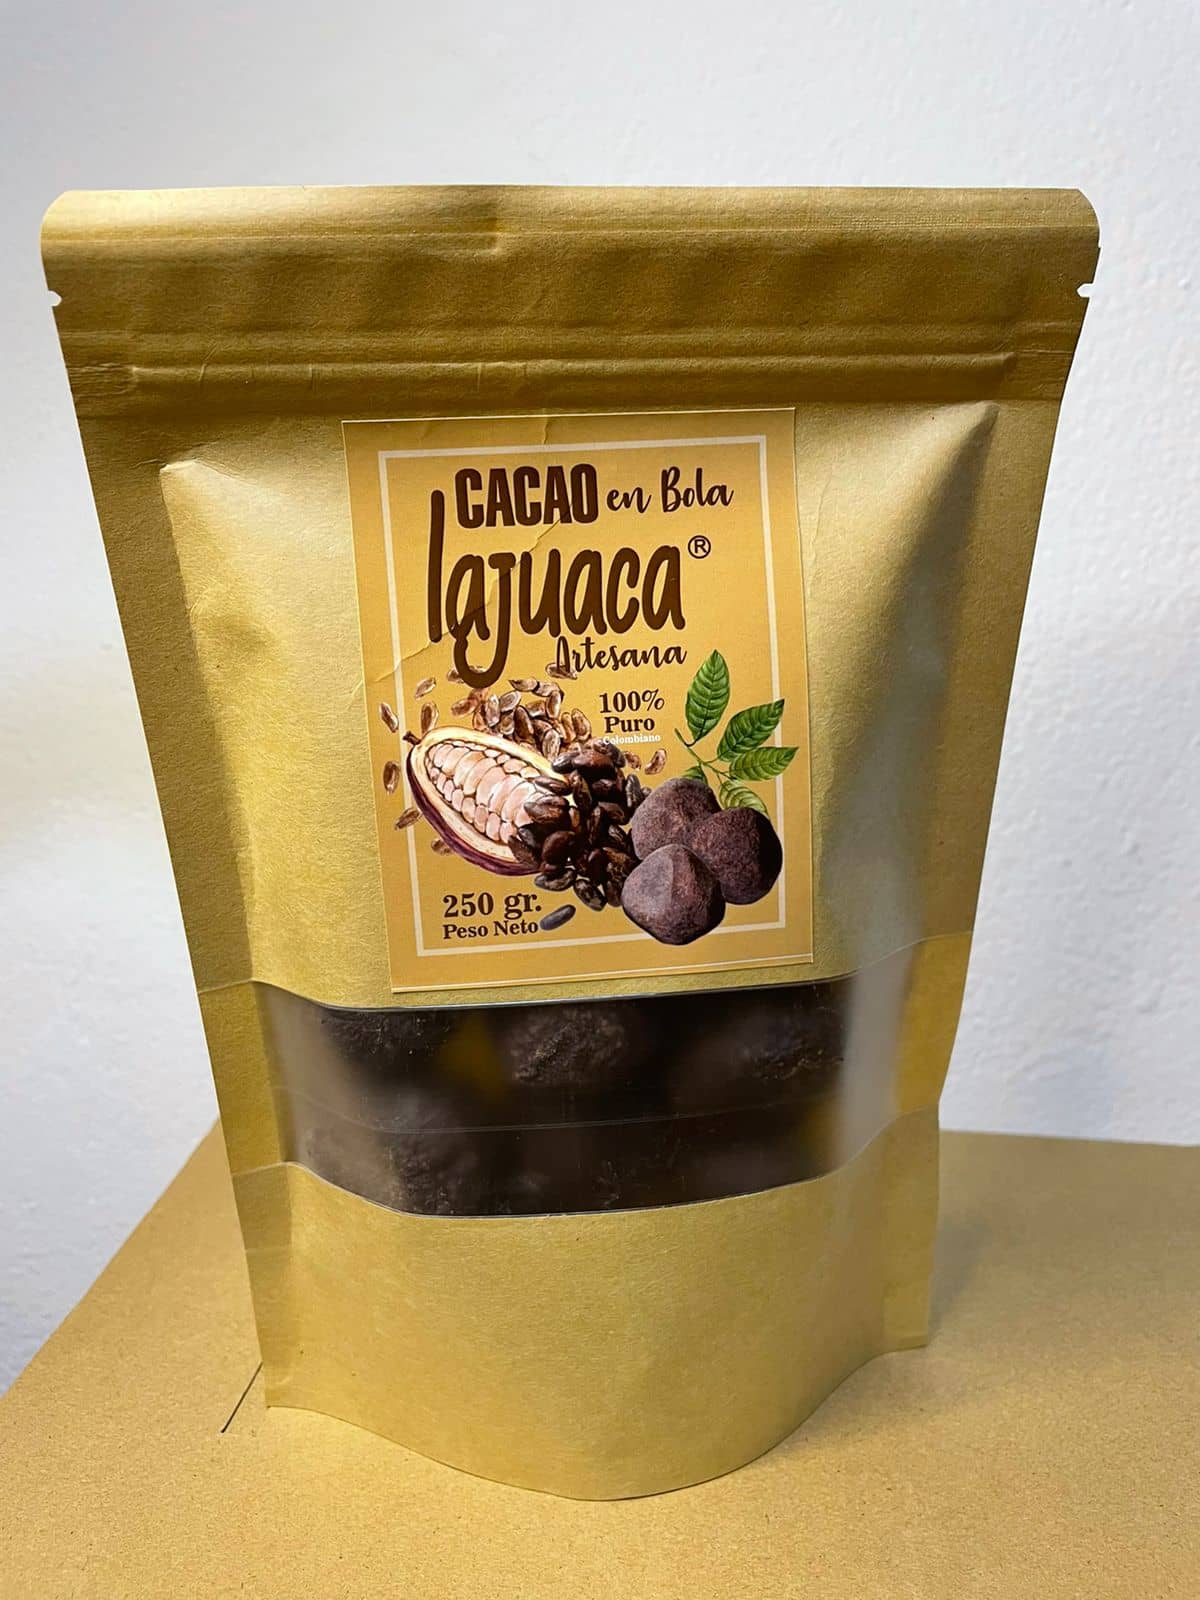 Bola de Cacao La Juaca Bolsa X 250 Gr